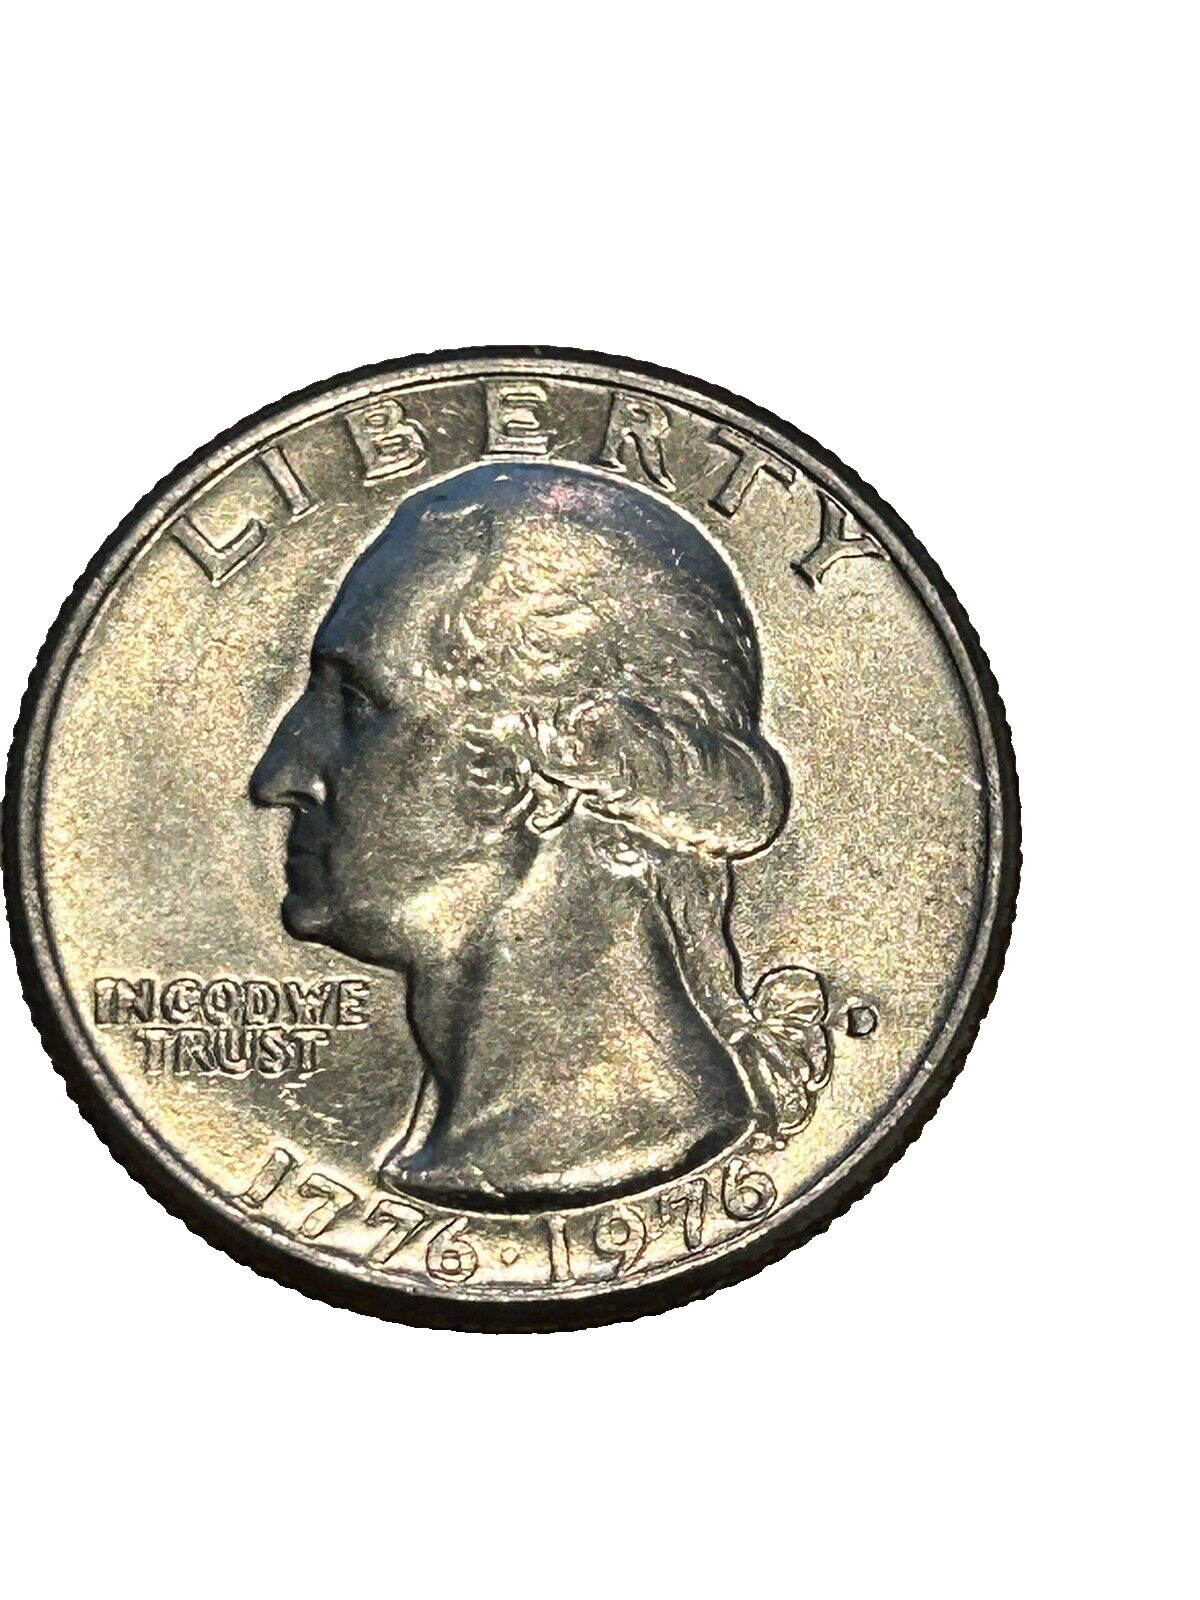 Rare 1776-1976 Bicentennial quarter filled d mint mark